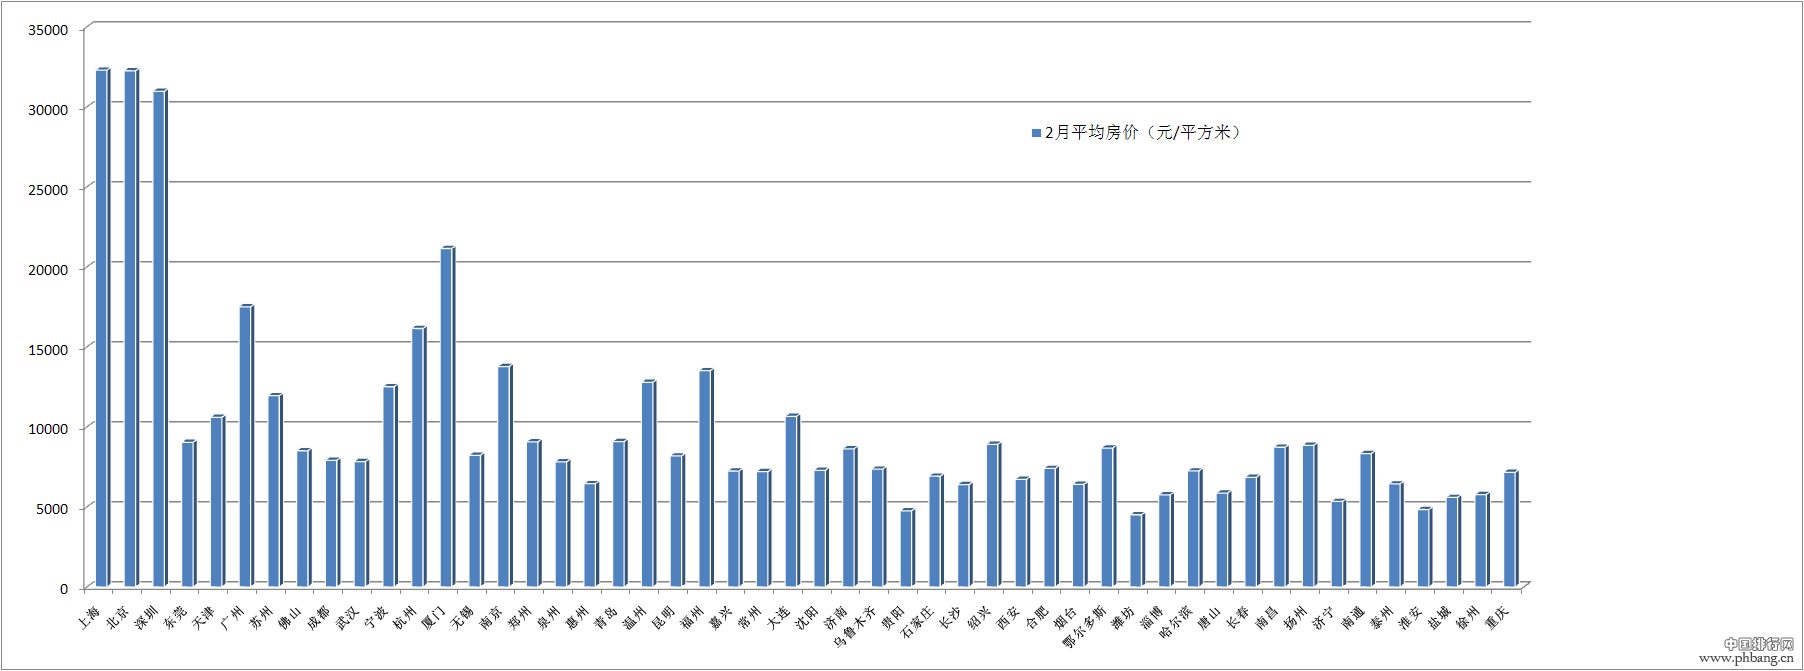 中国城市人口_2013中国城市人口排名